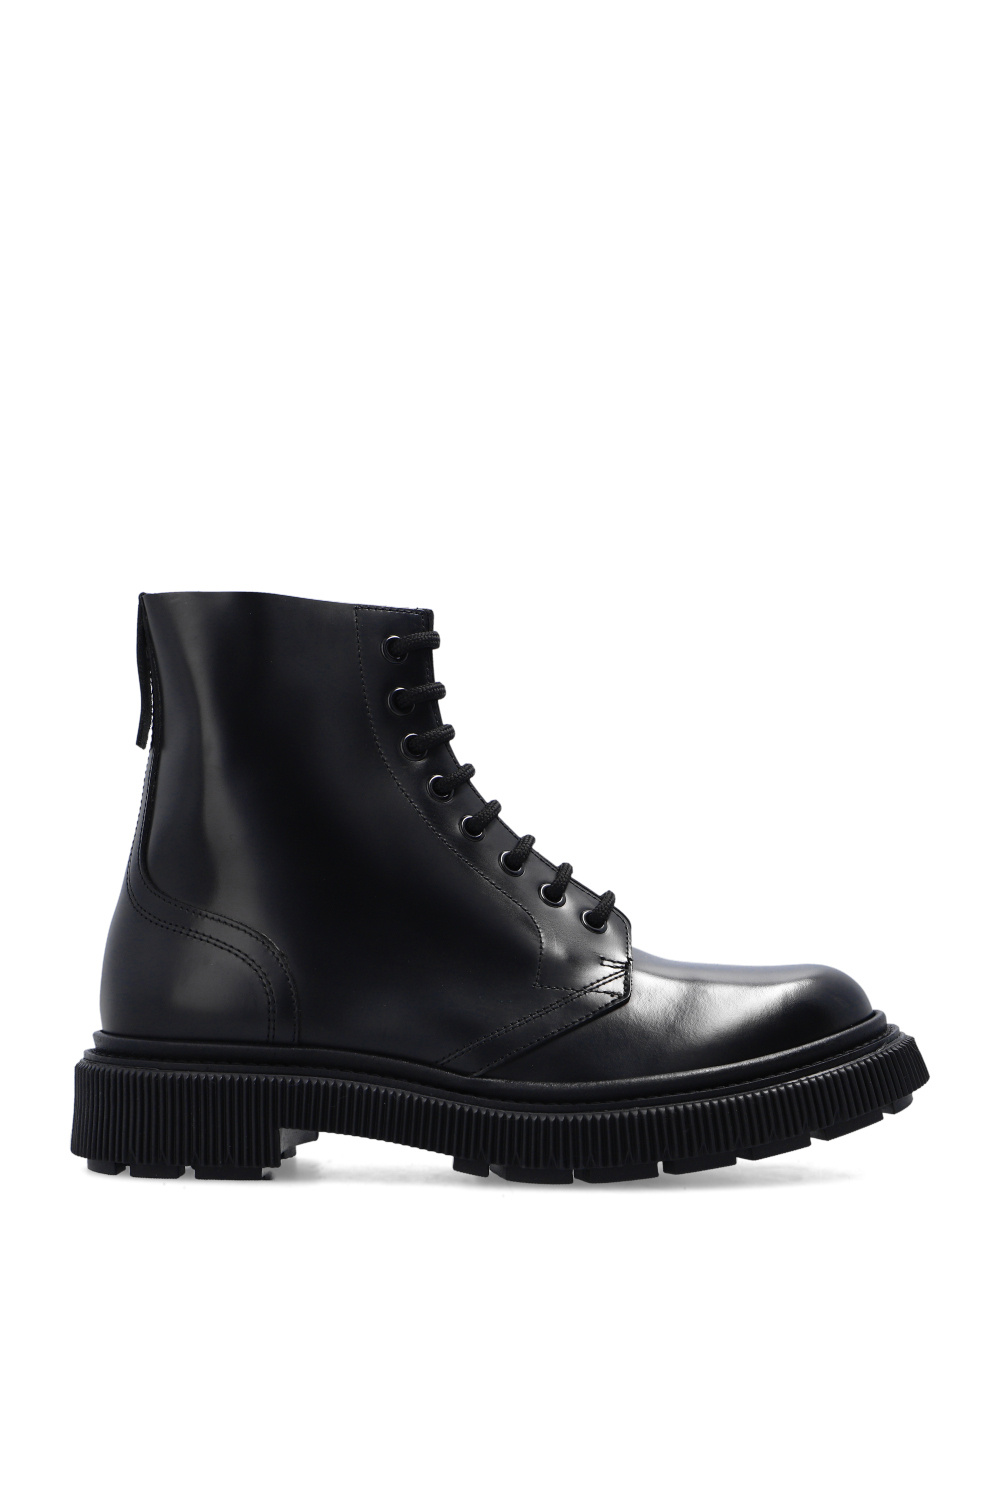 Adieu Paris ‘Type 165’ boots